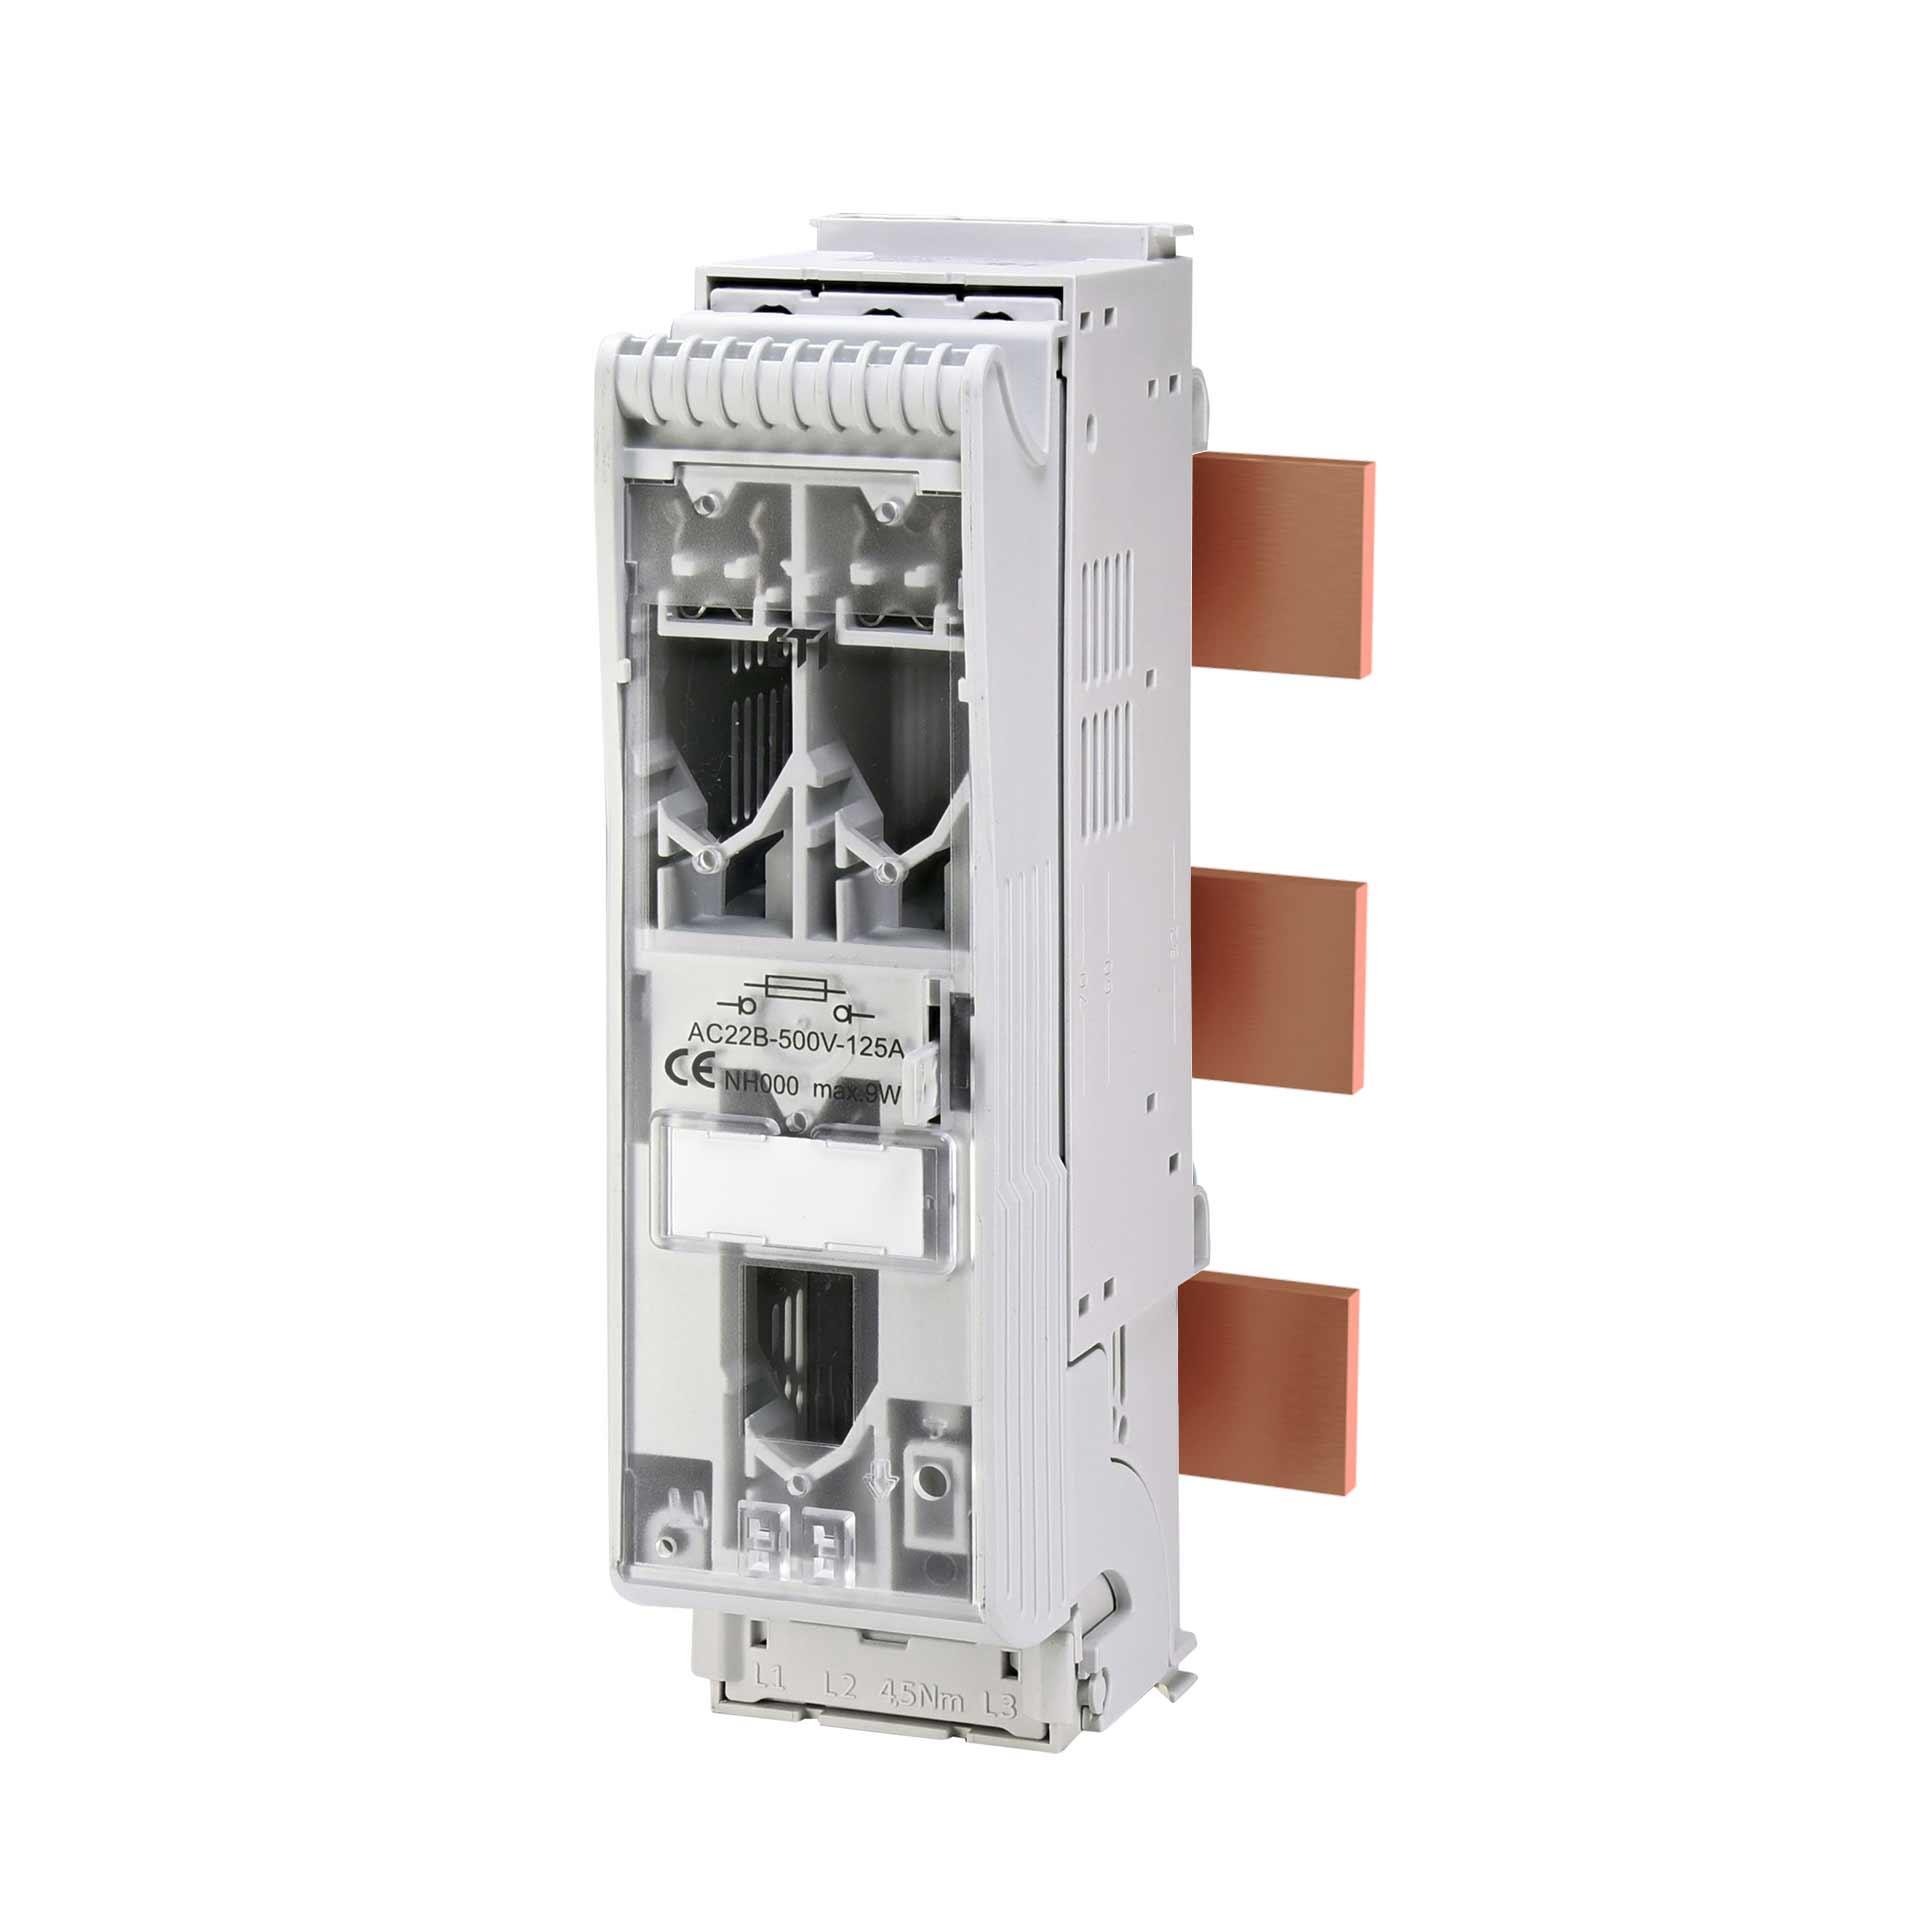 Interrupteur-sectionneur-fusible Gr.000, 3P, max. 125A, KVL-B-000 F50 AO (système de jeux de barres)